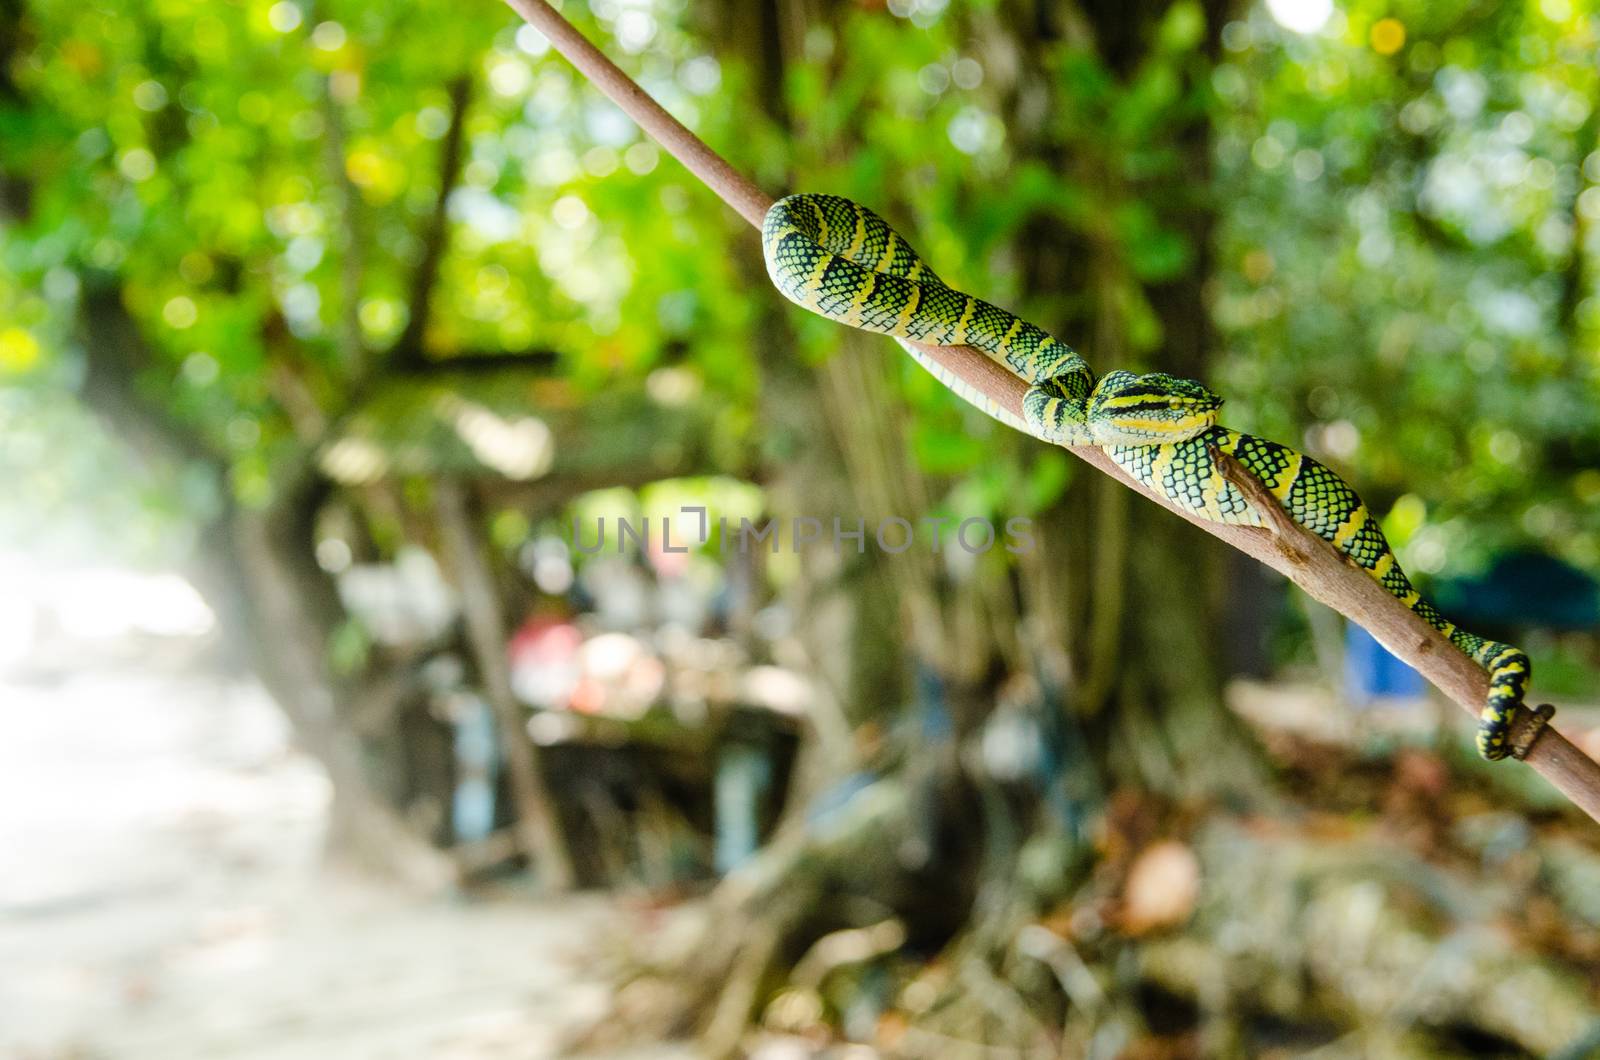 Tropidolaemus wagleri poisonous snake green yellow striped asian by Vanzyst